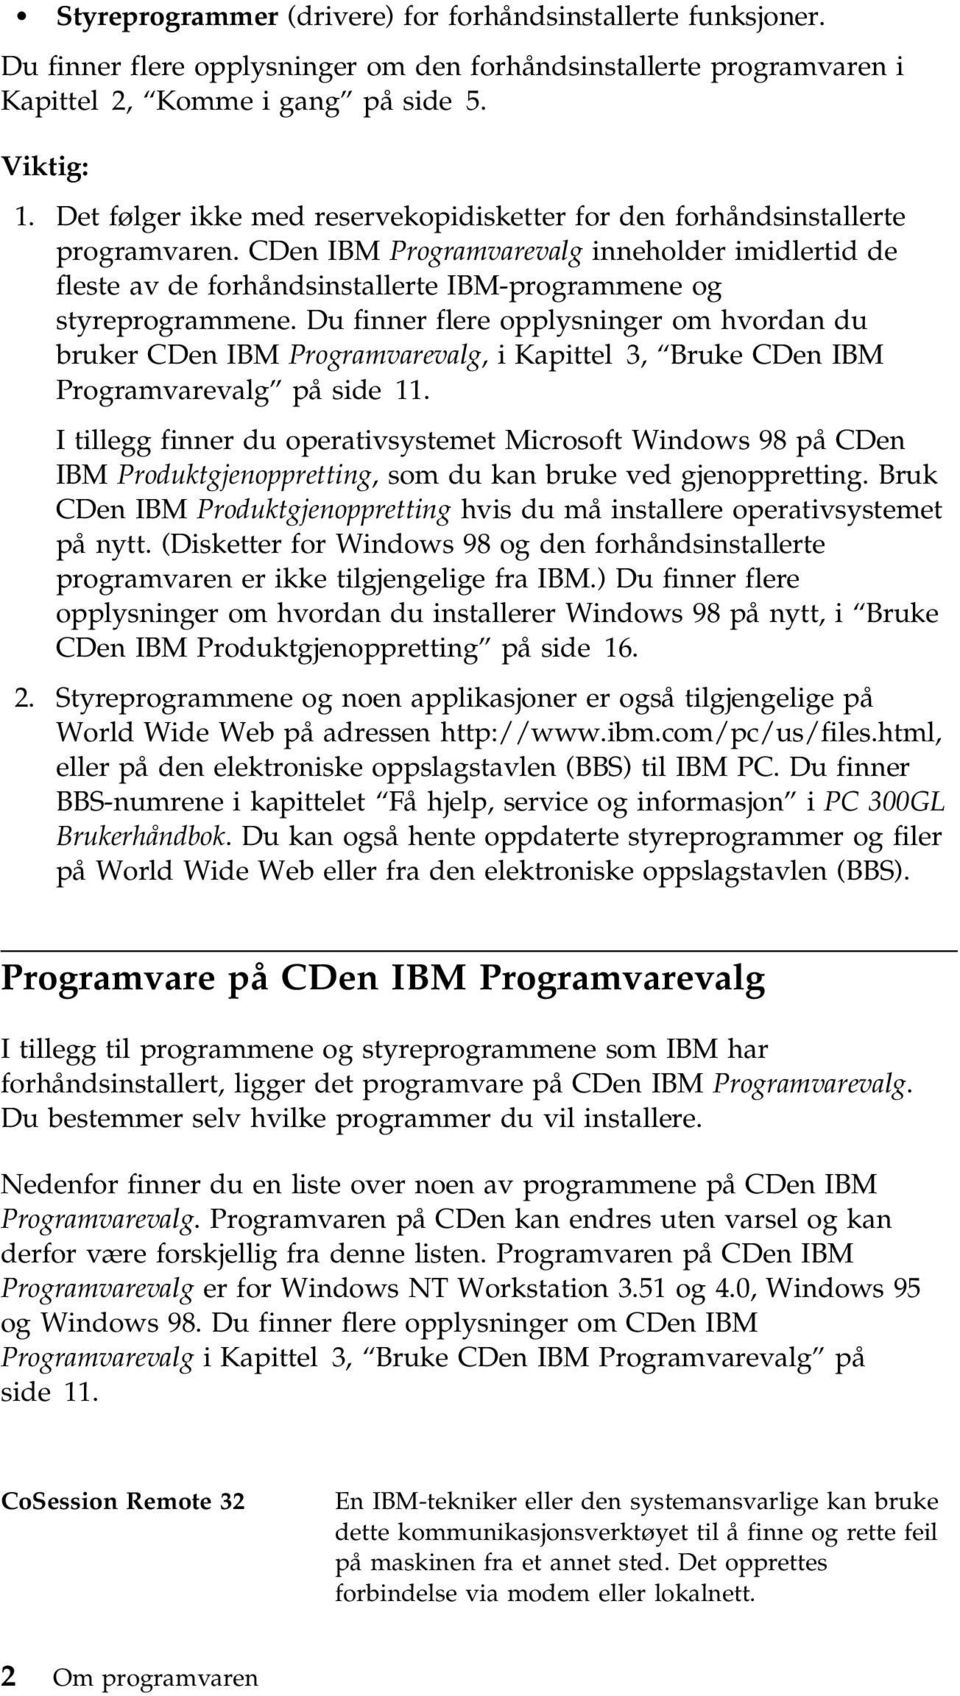 CDen IBM Programvarevalg inneholder imidlertid de fleste av de forhåndsinstallerte IBM-programmene og styreprogrammene.